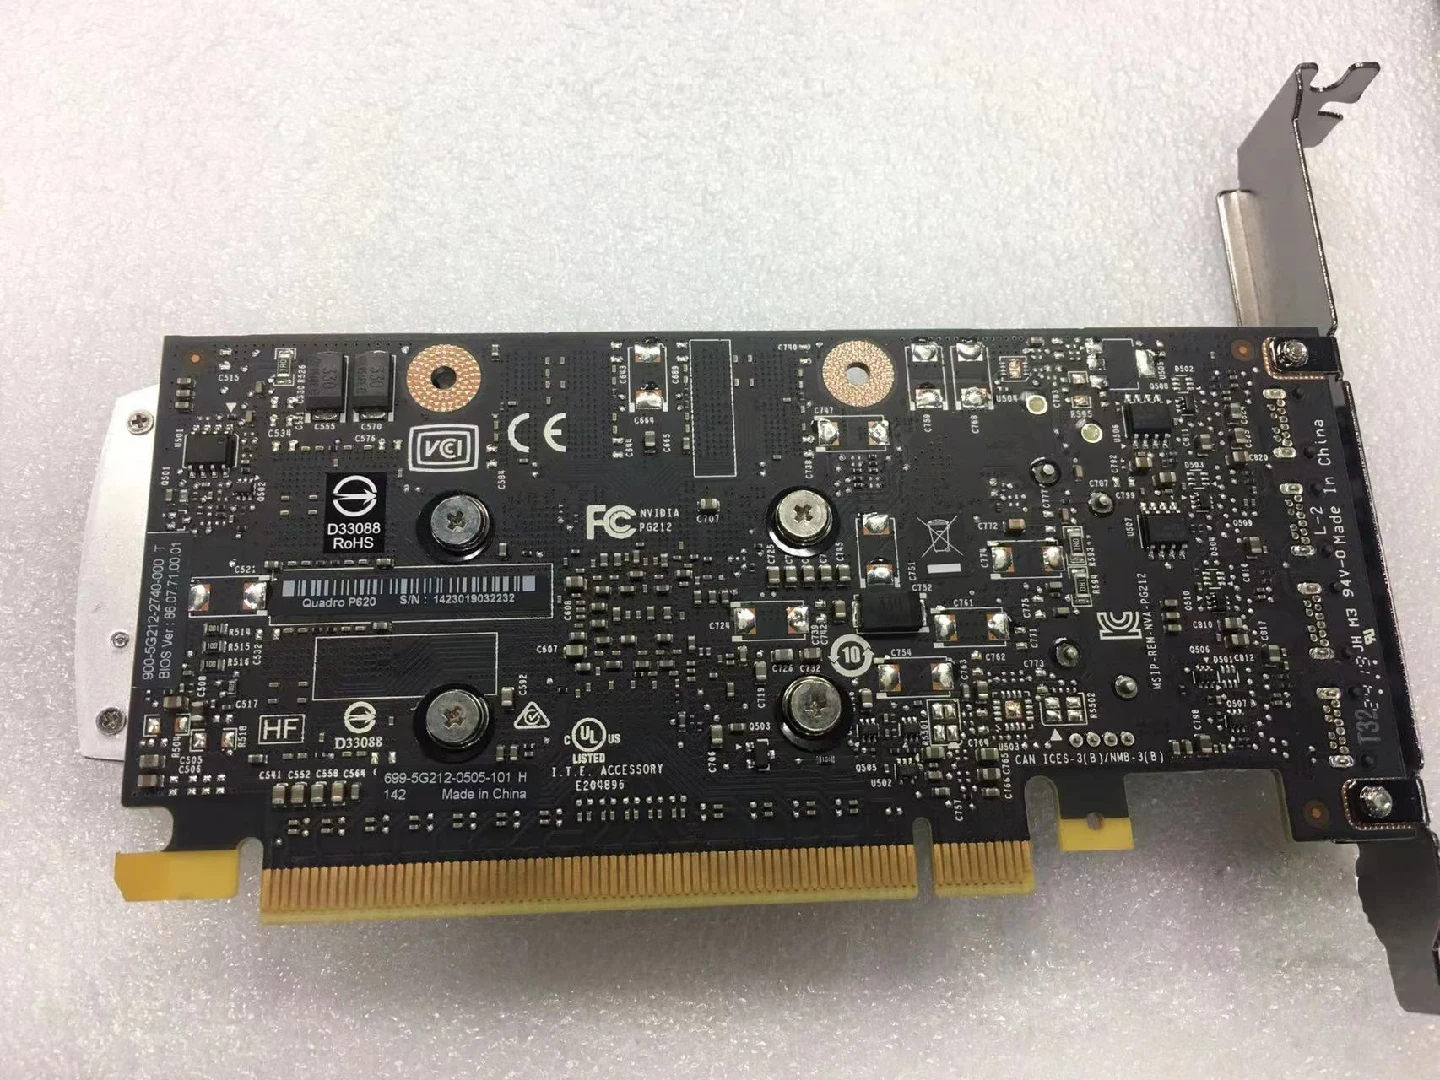 Naudojama Nvidia Quadro P620 2G, P620 DDR5 Vaizdo plokštė DP Grafikos Kortelės